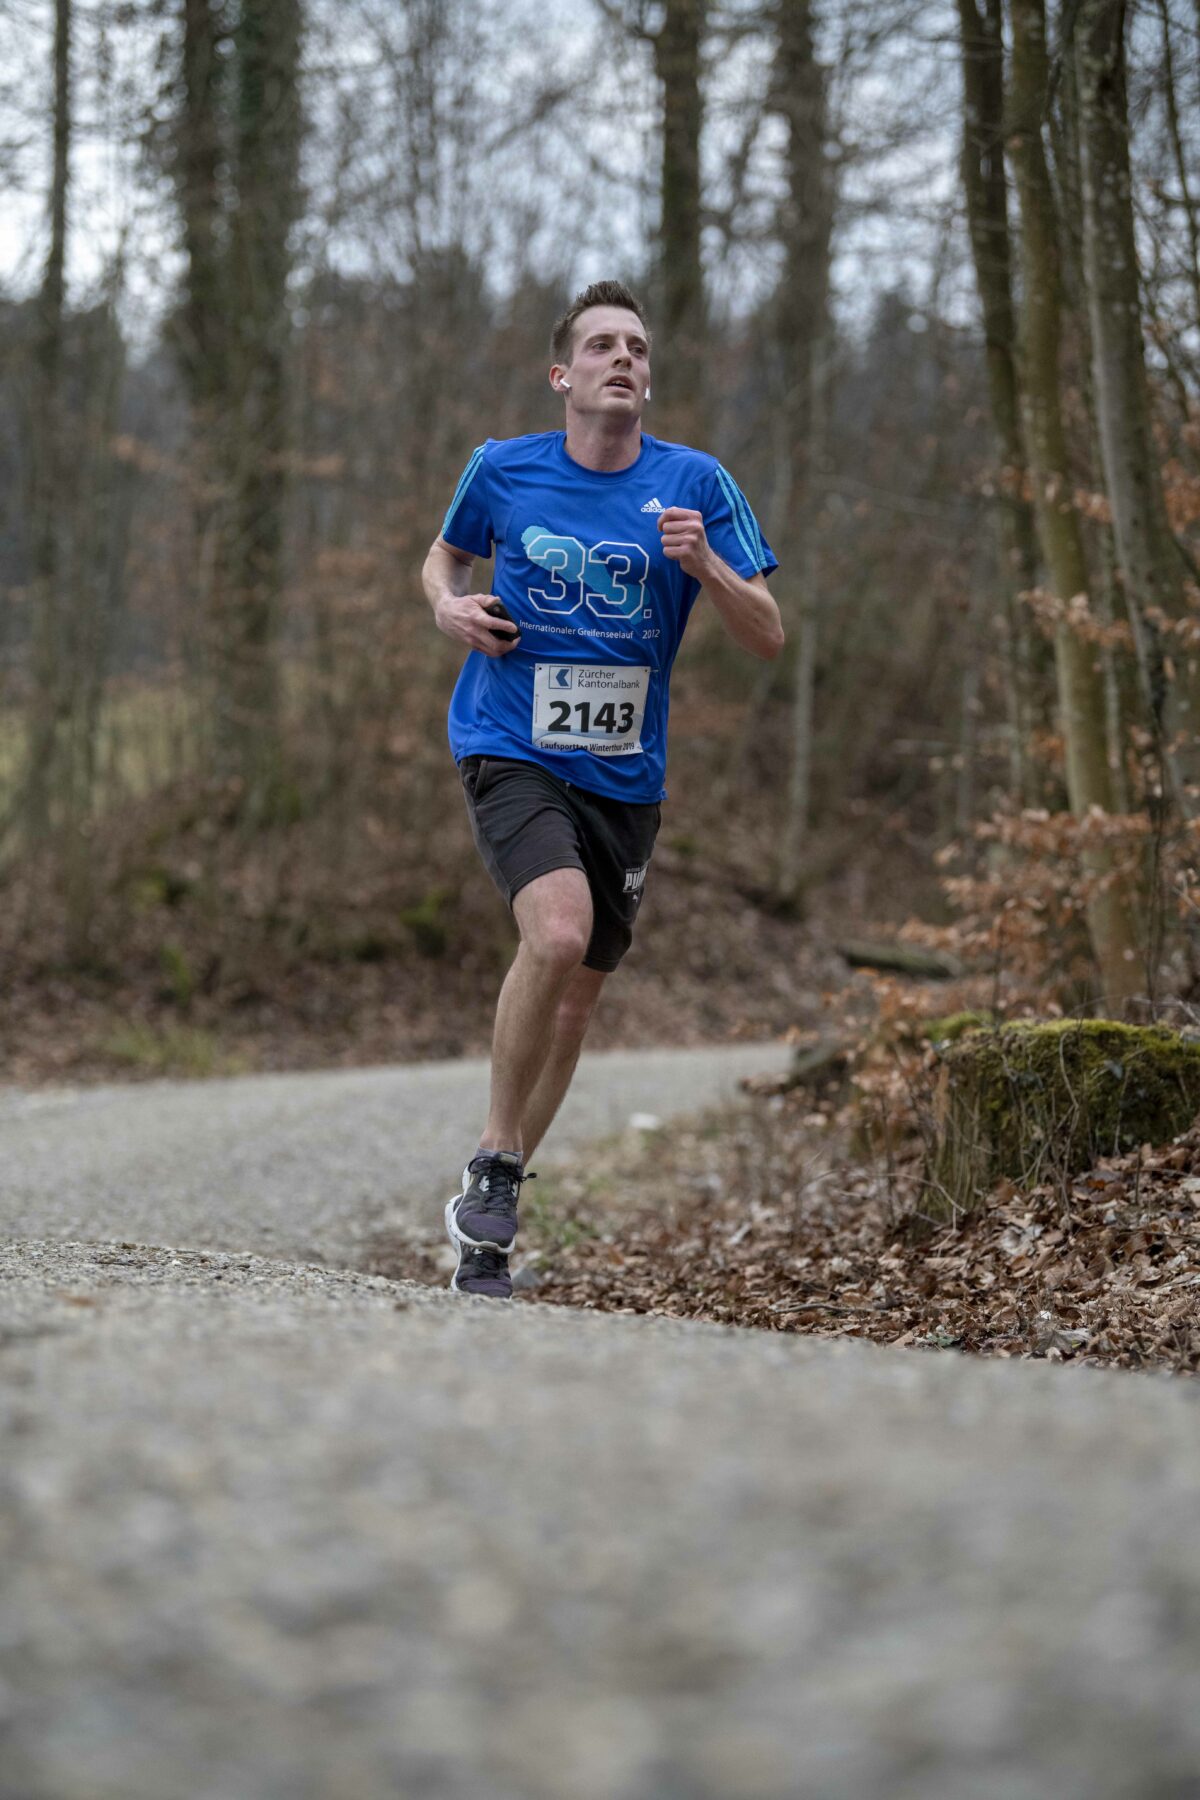 Am Samstag, 02. März 2019 fand im Rahmen des ZKB ZueriLaufCups unter dem Patronat der Zuercher Kantonalbank in Winterthur der 50. Laufsporttag statt. (PPR/Marlies Thurnheer)